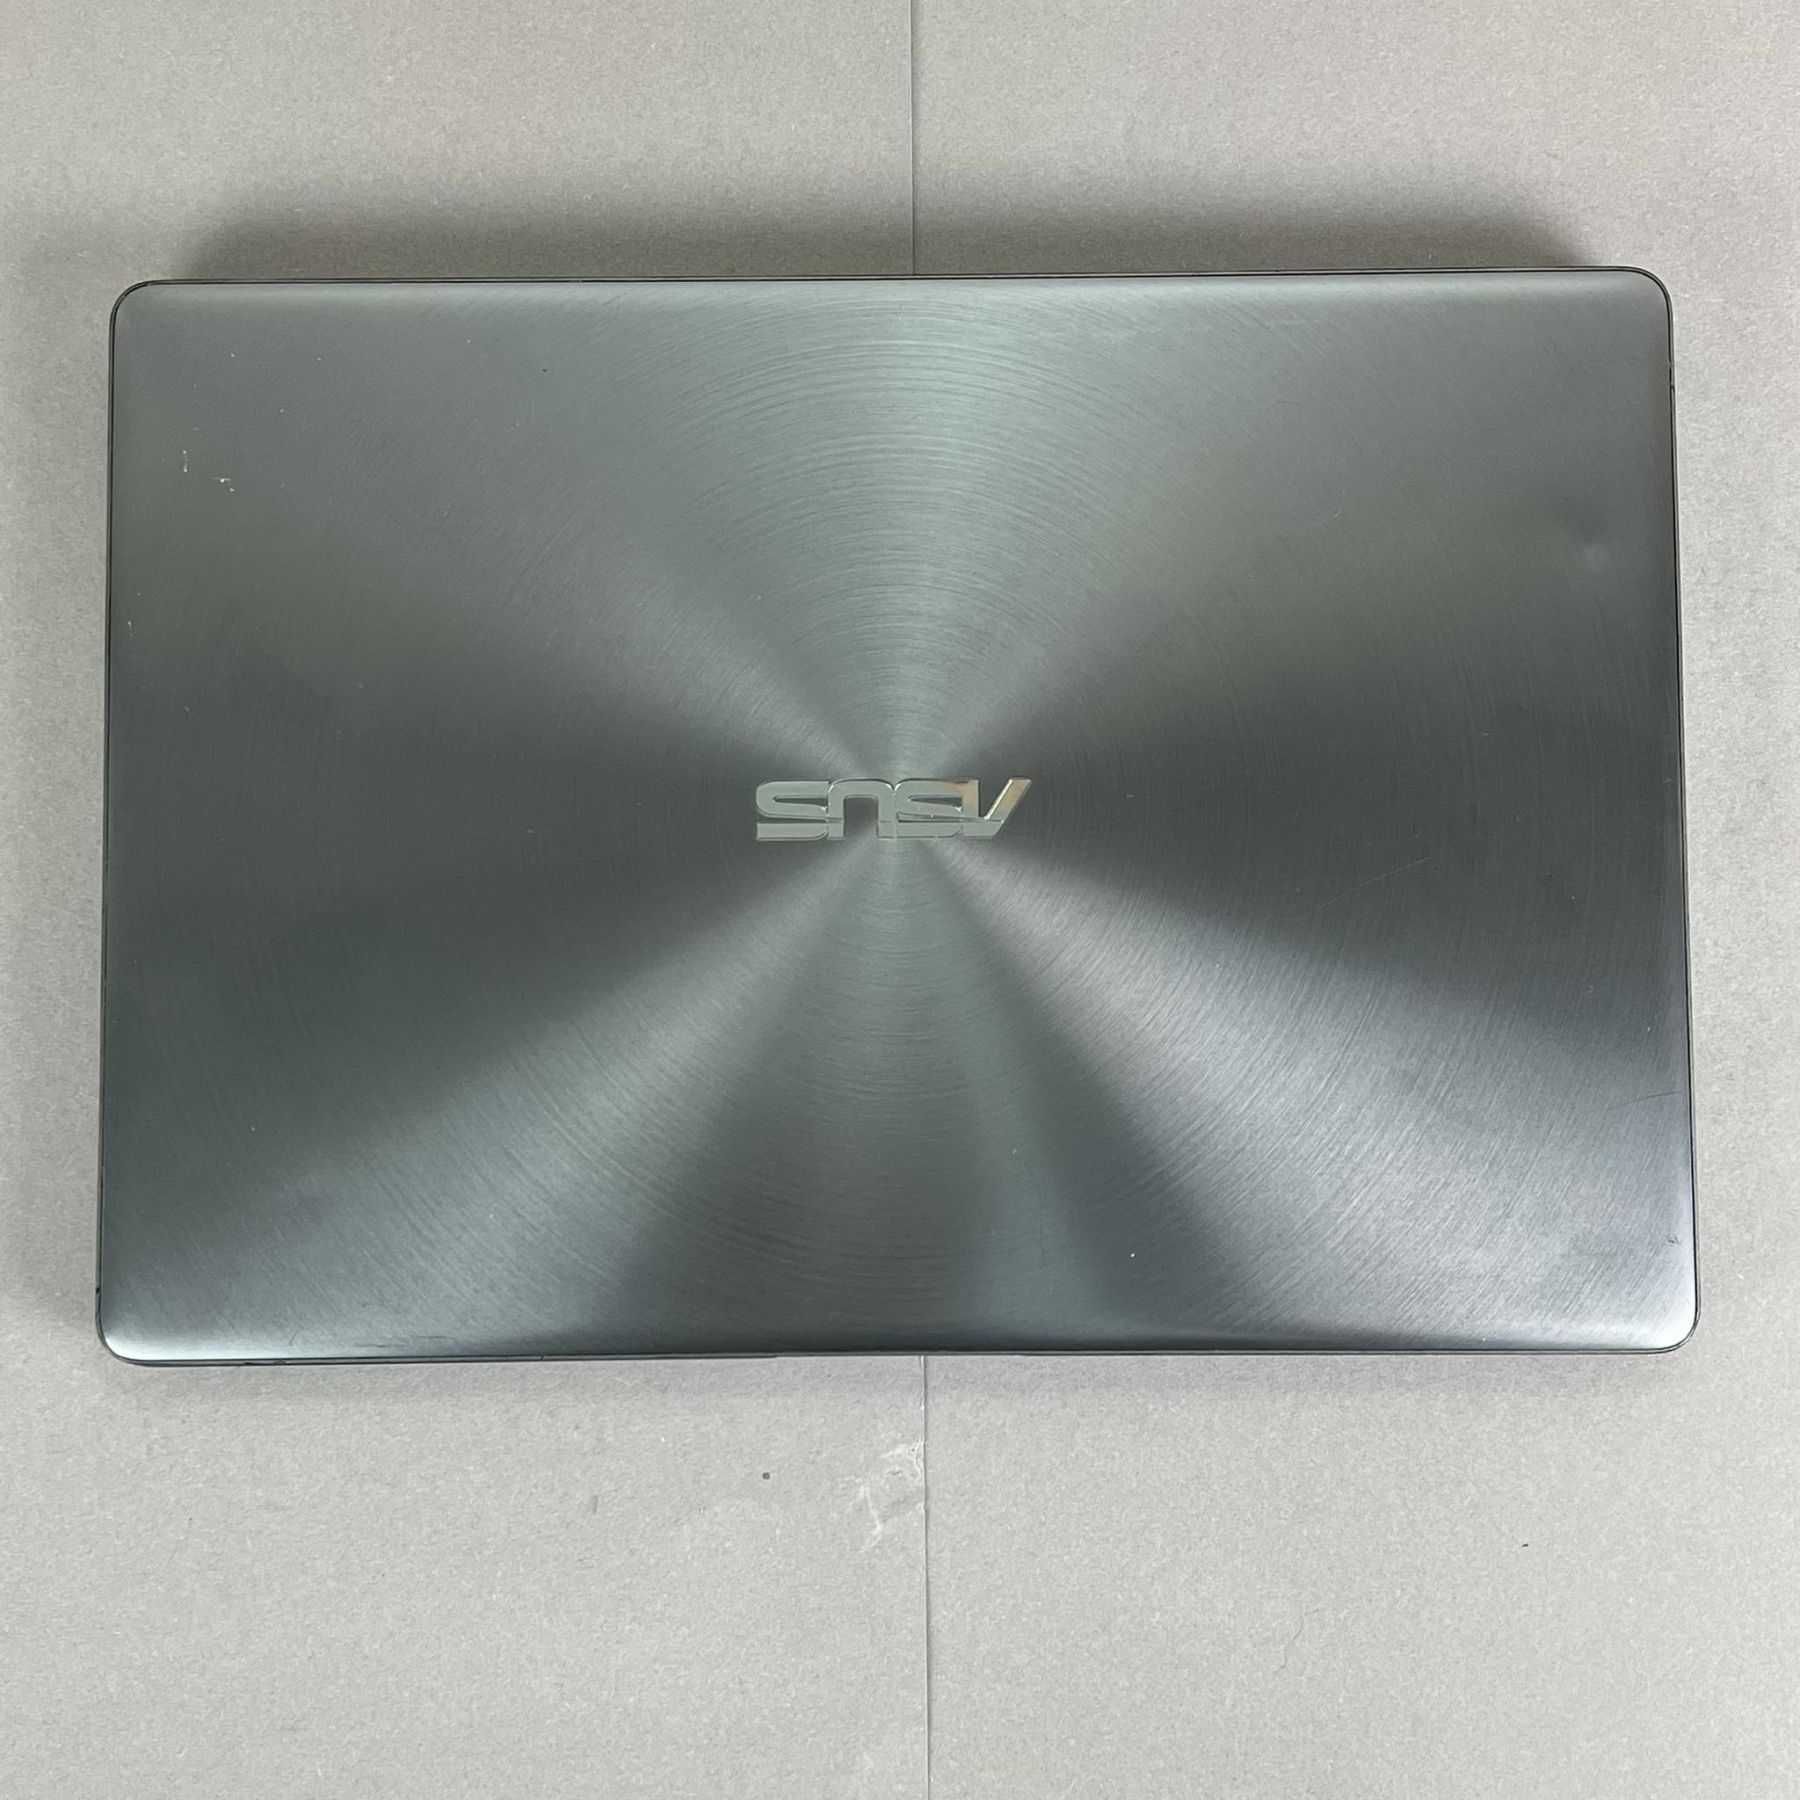 Ноутбук Asus ZenBook 13 UX331UA i5-8250U/8GB/SSD 256GB/13.3" FHD